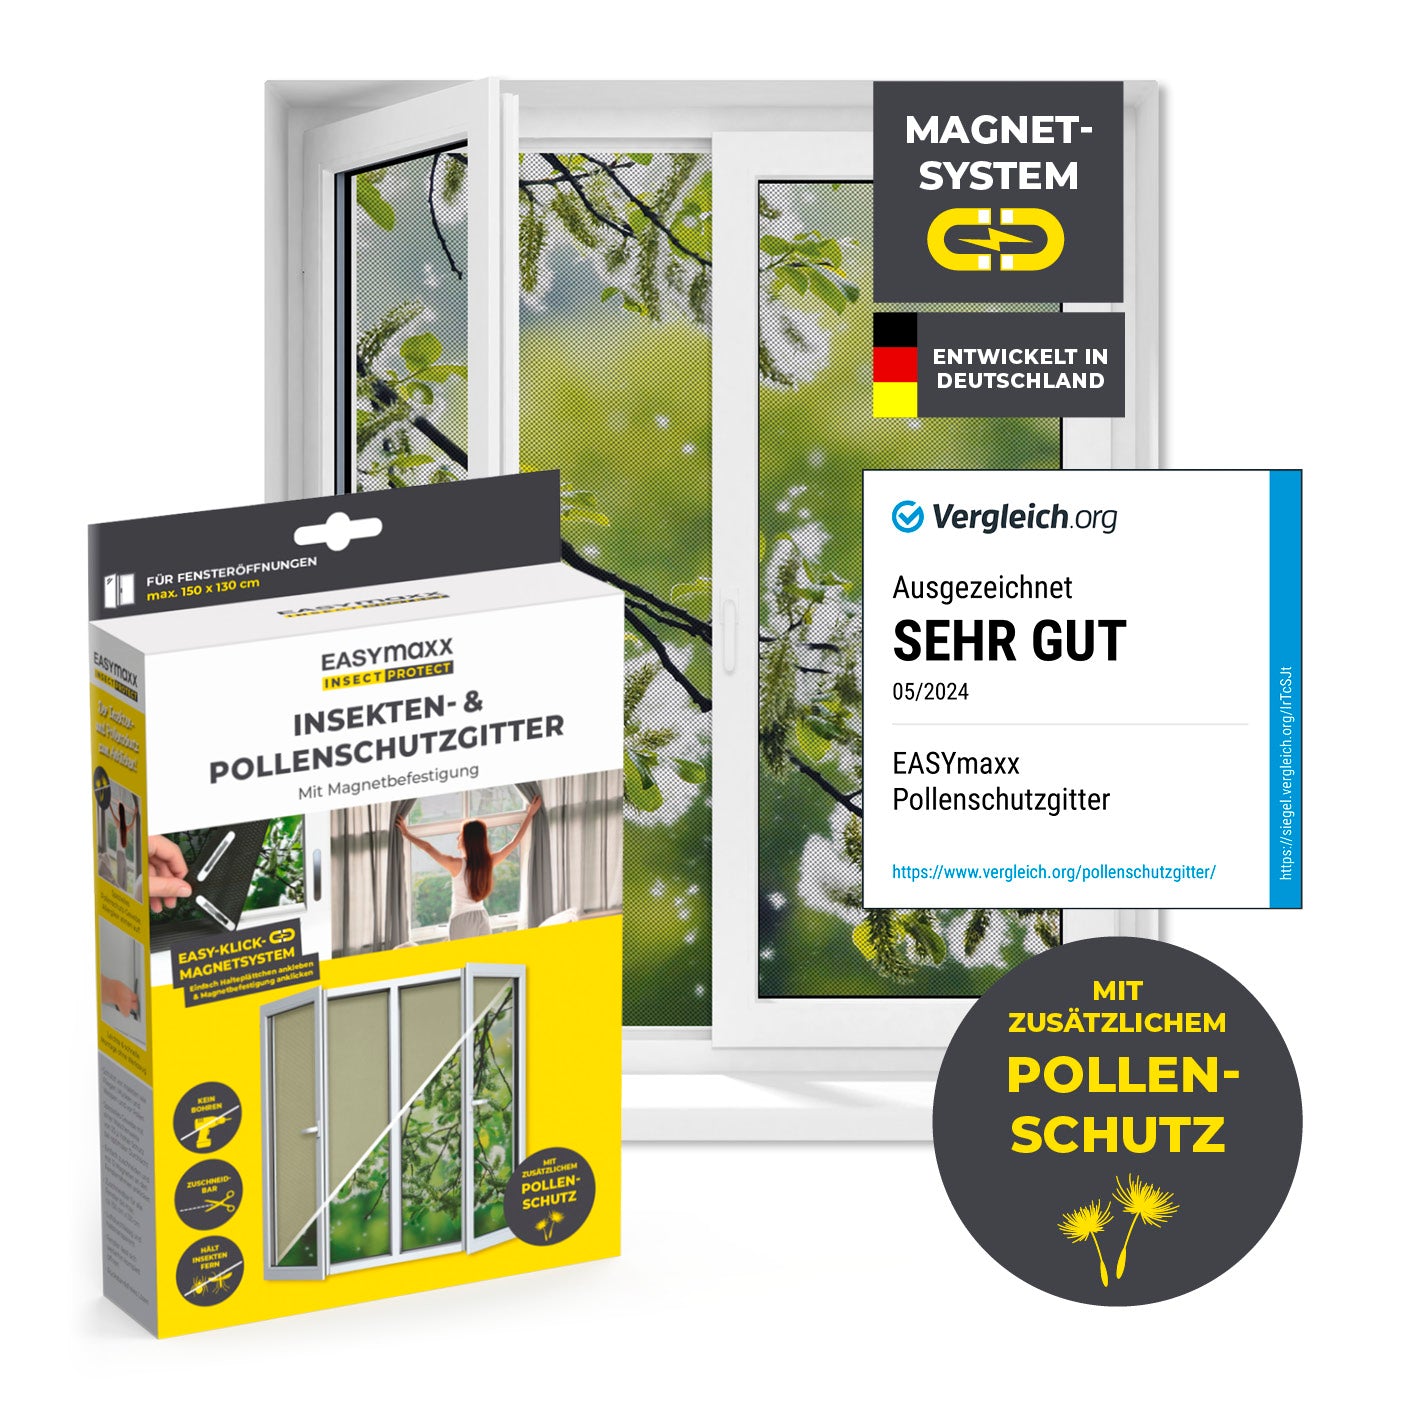 Insekten- & Pollenschutzgitter mit Magnetbefestigung für Fenster bis zu 130 x 150 cm von EASYmaxx